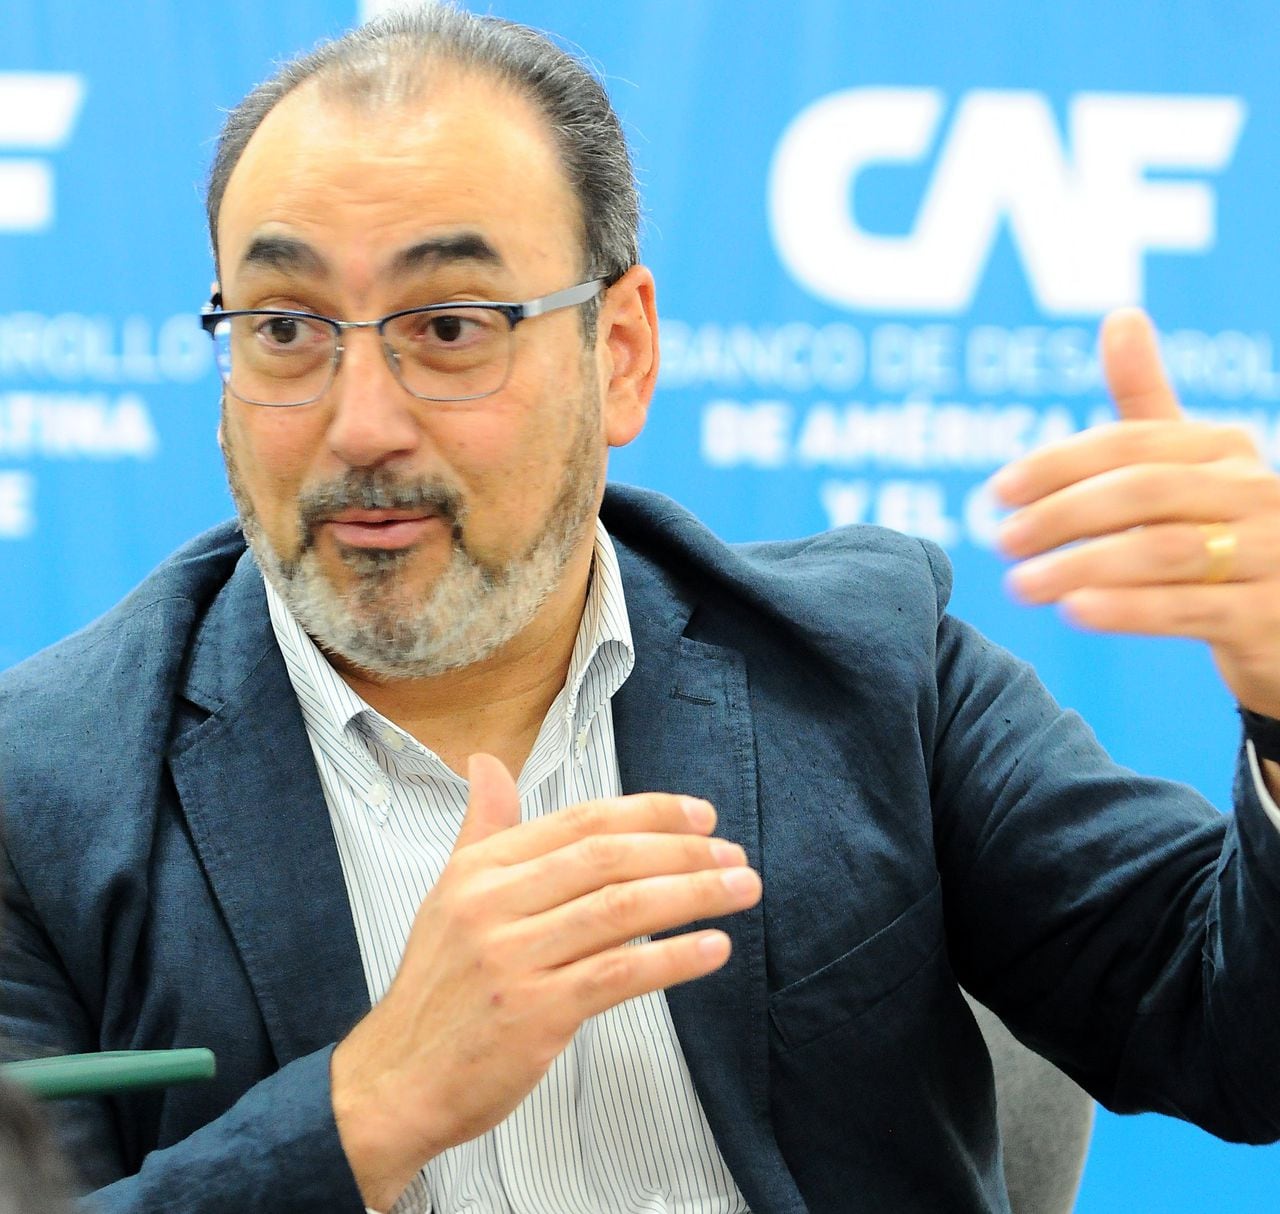 Cali: Economía, Sergio Díaz-Granados, presidente del CAF, Banco de desarrollo de América Latina y Caribe.